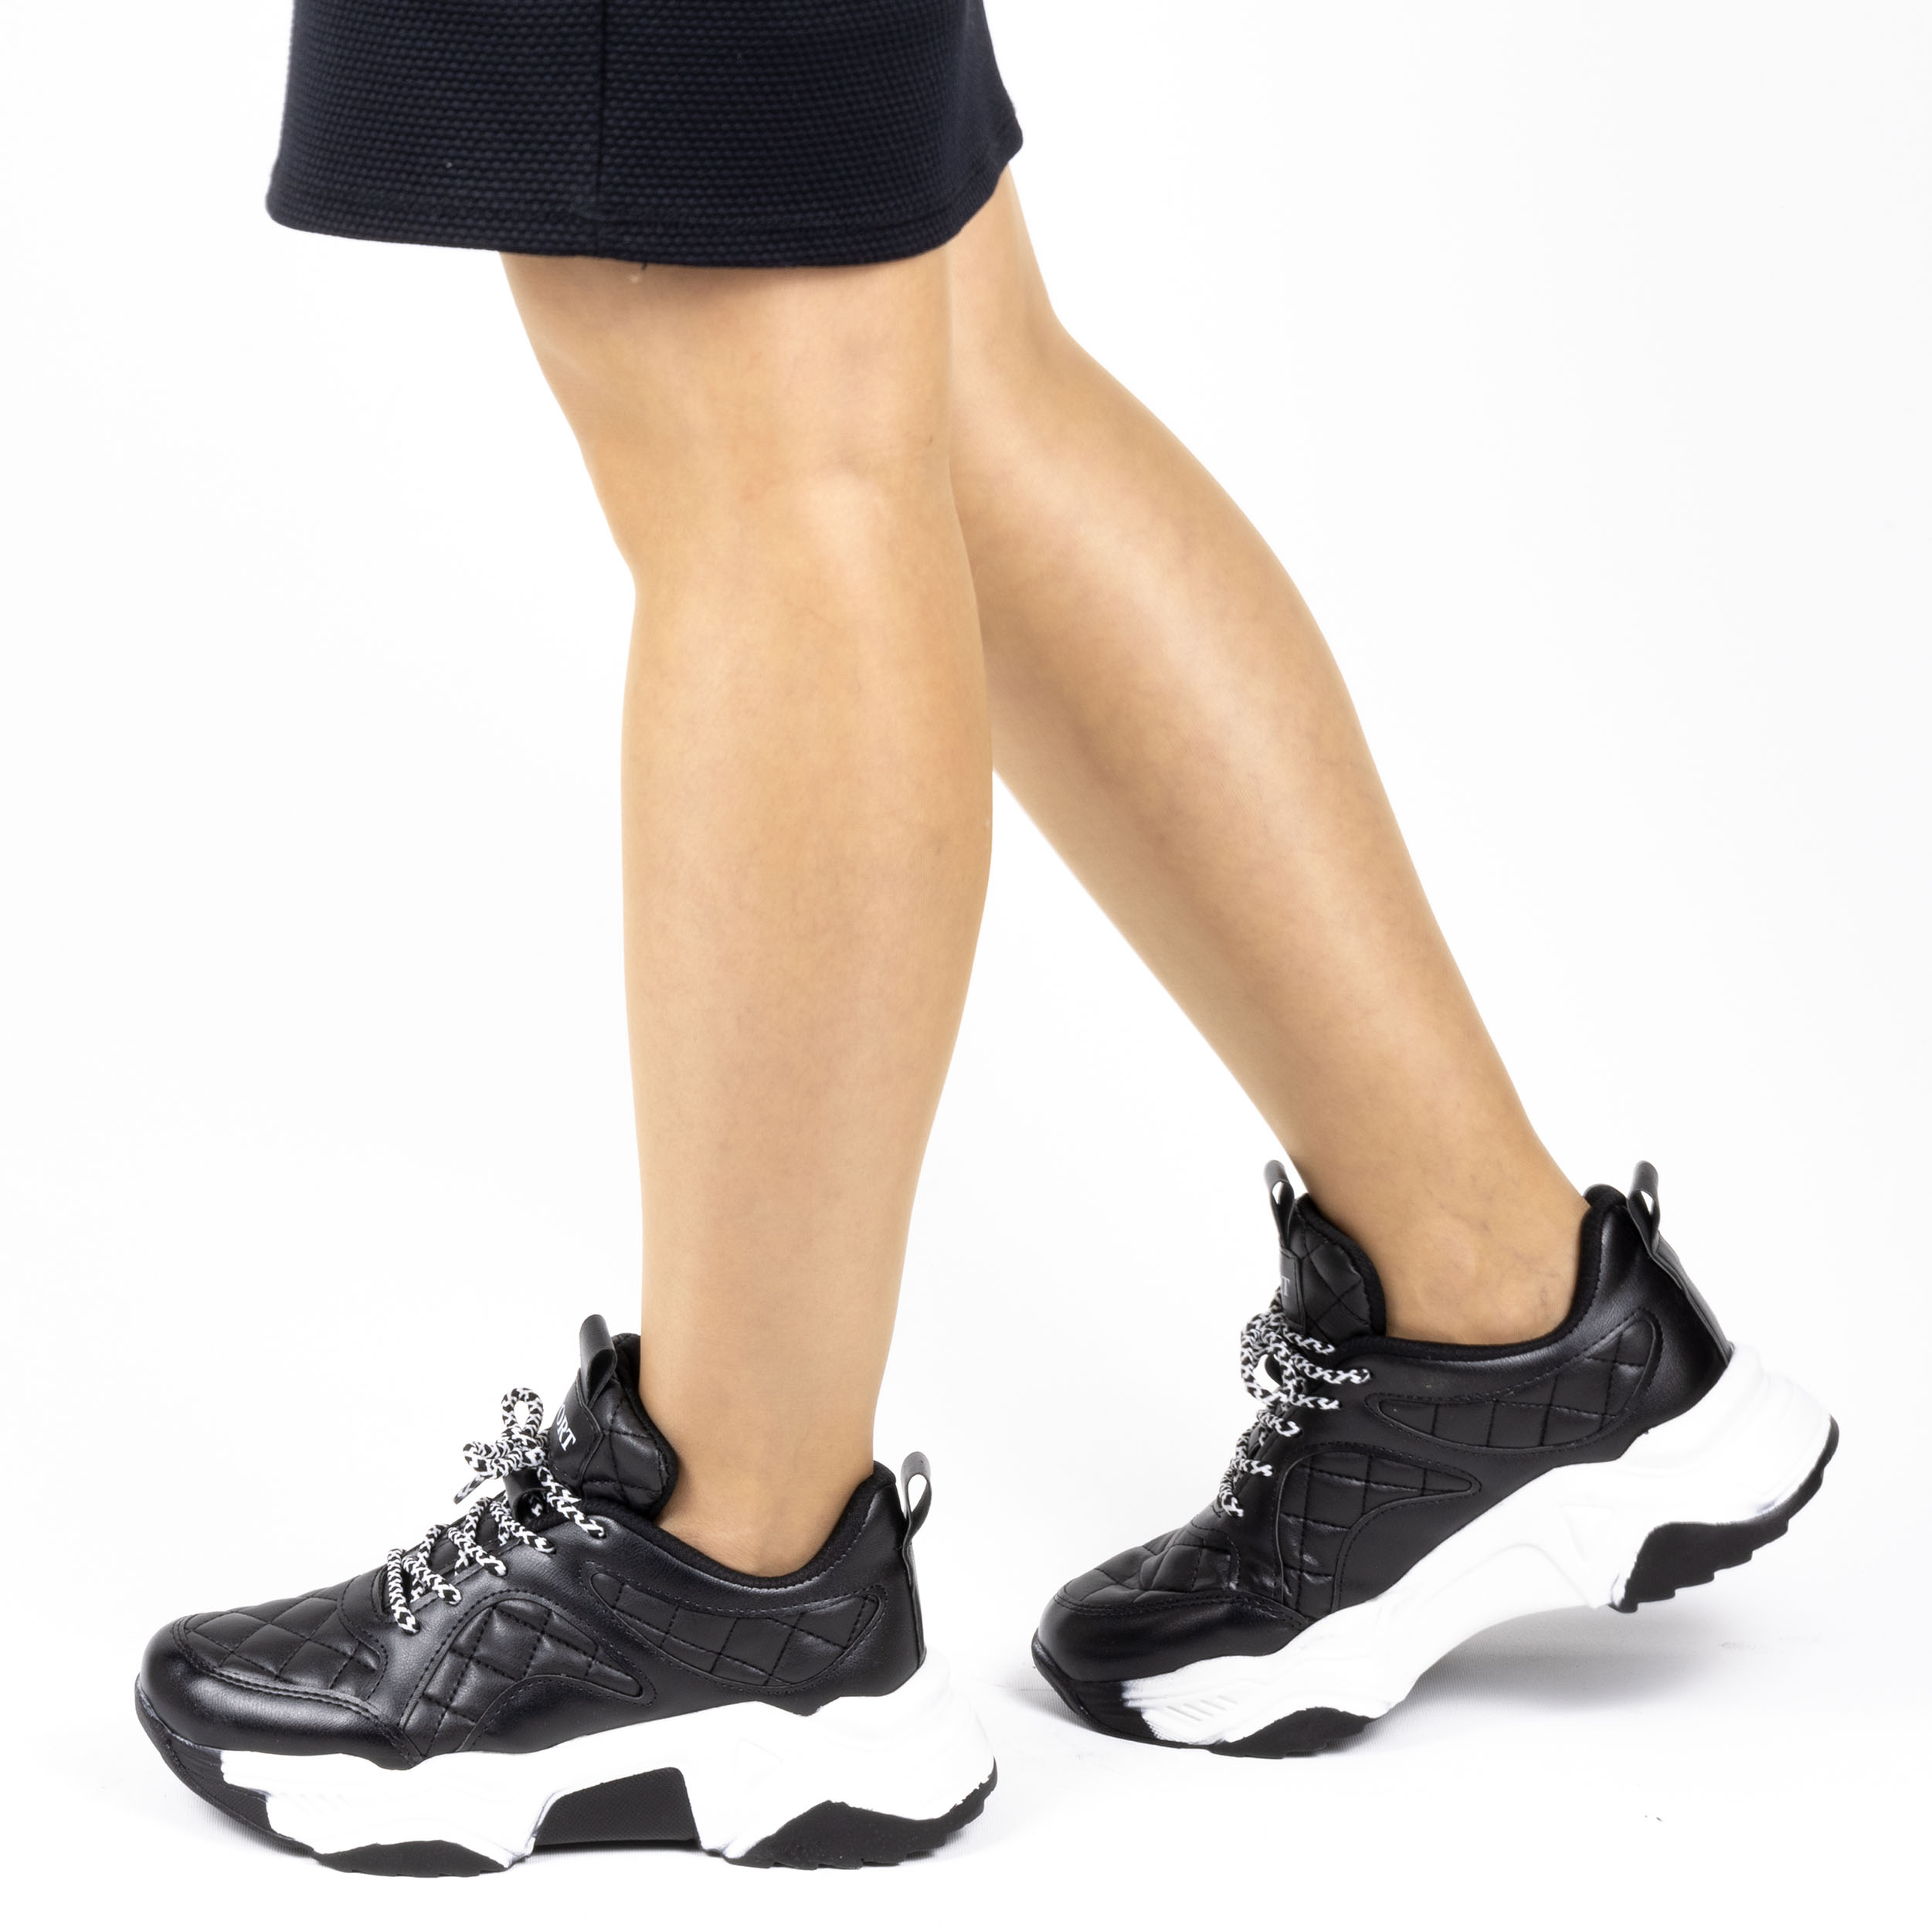 Kadın Günlük Siyah Kapitone Detaylı Kalın Tabanlı 5 Cm Sneakers Spor Ayakkabı, Renk: Siyah, Beden: 39